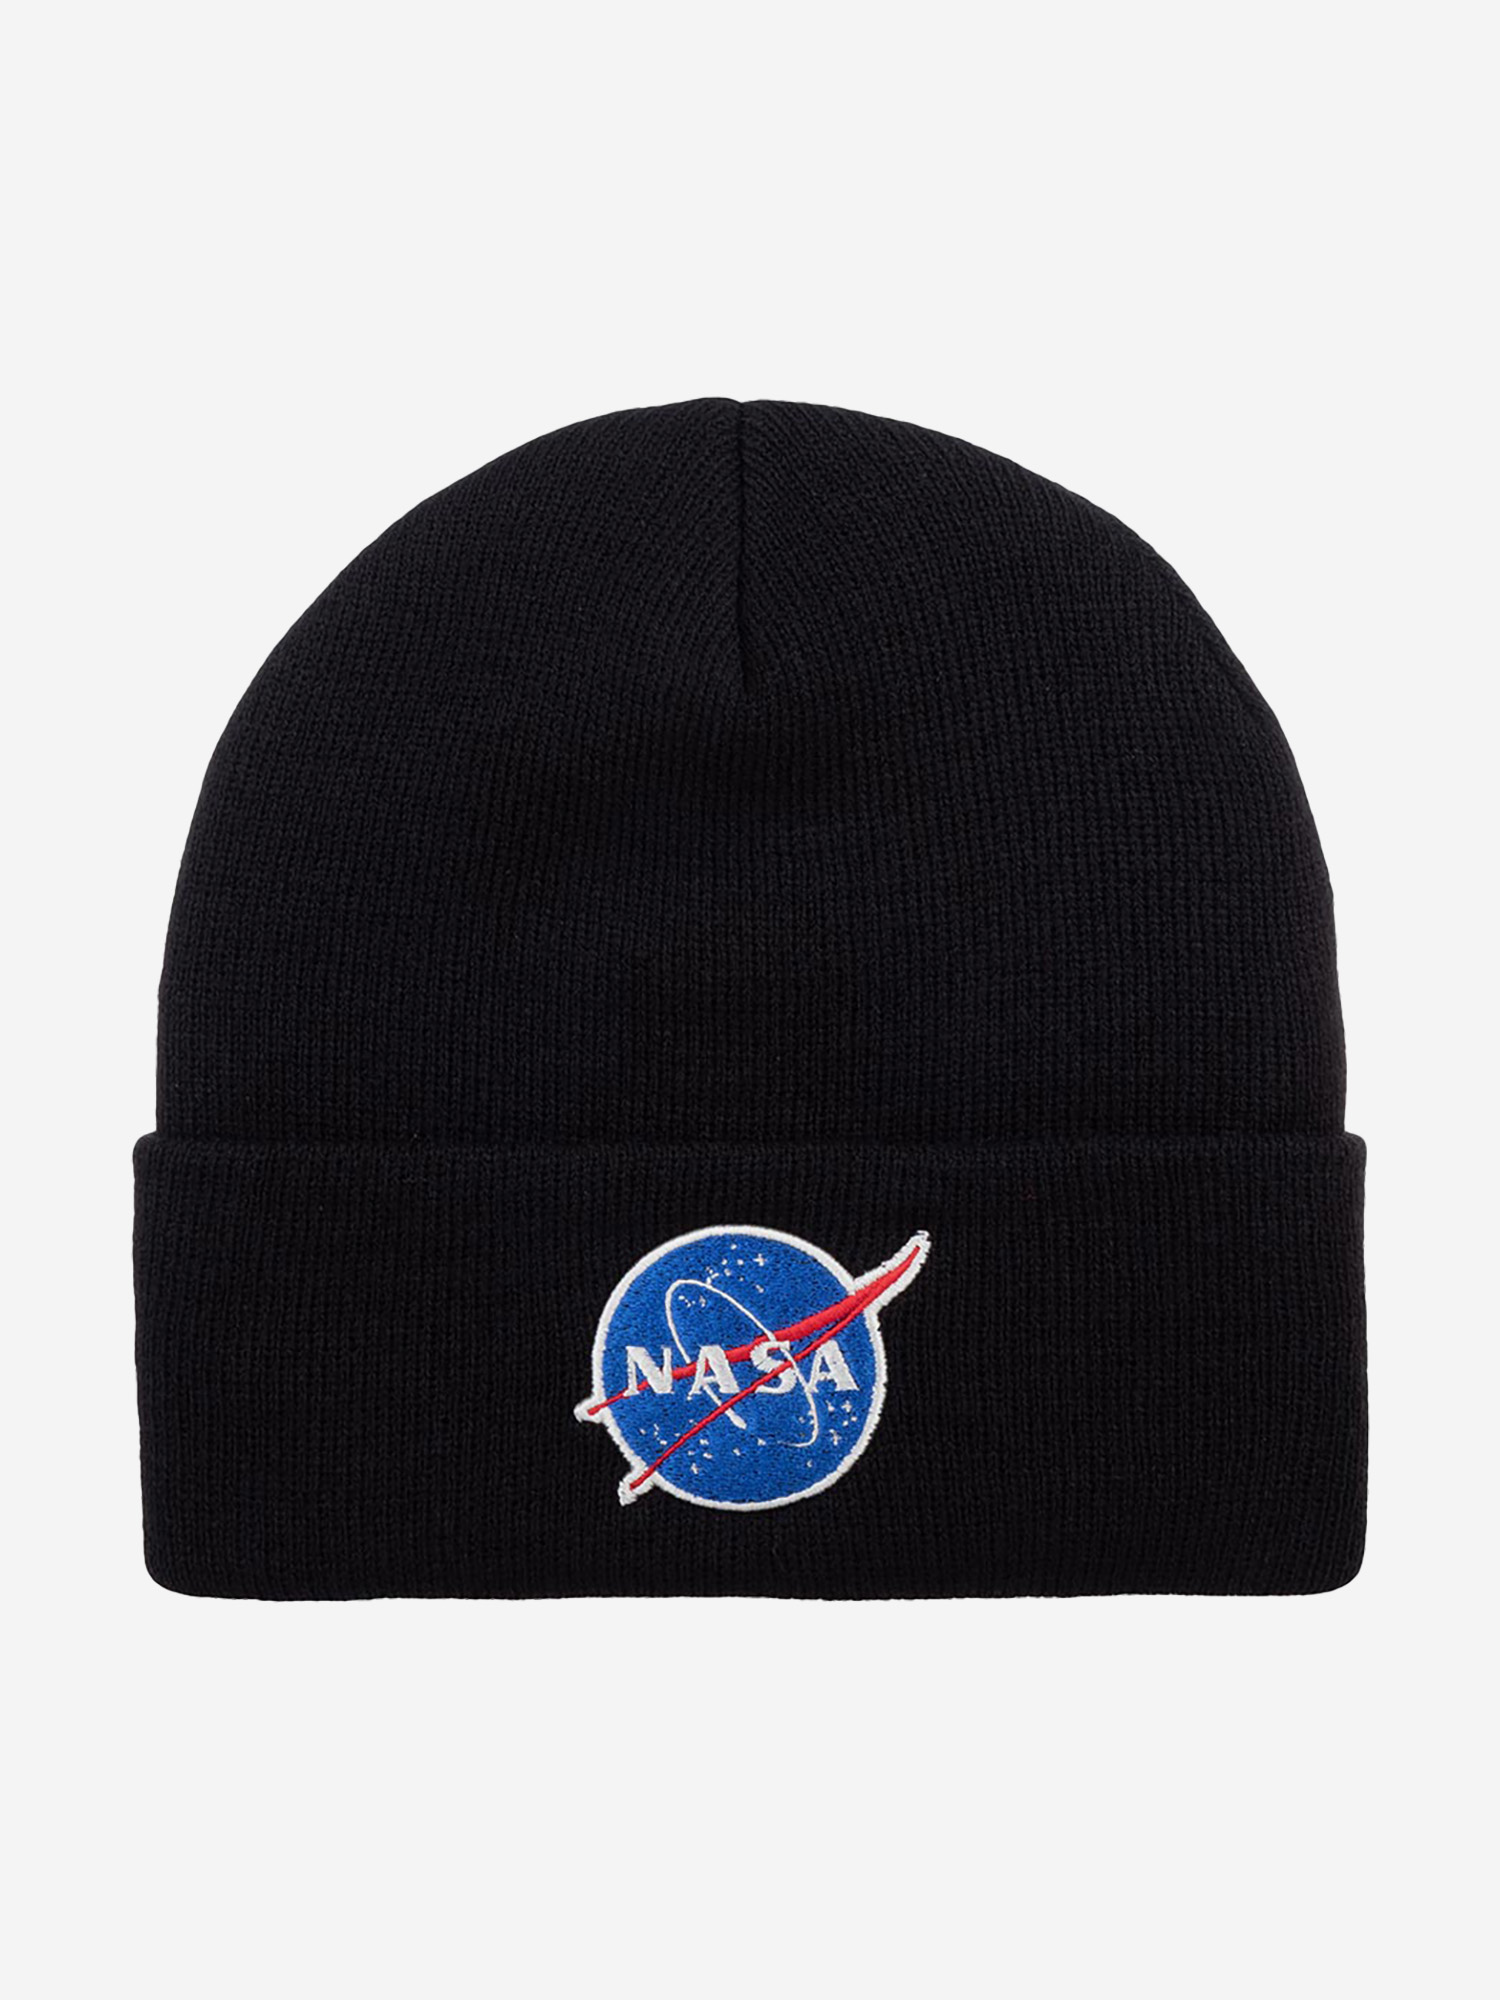 Шапка с отворотом AMERICAN NEEDLE 21019A-NASA NASA Cuffed Knit (черный), Черный nasa archives